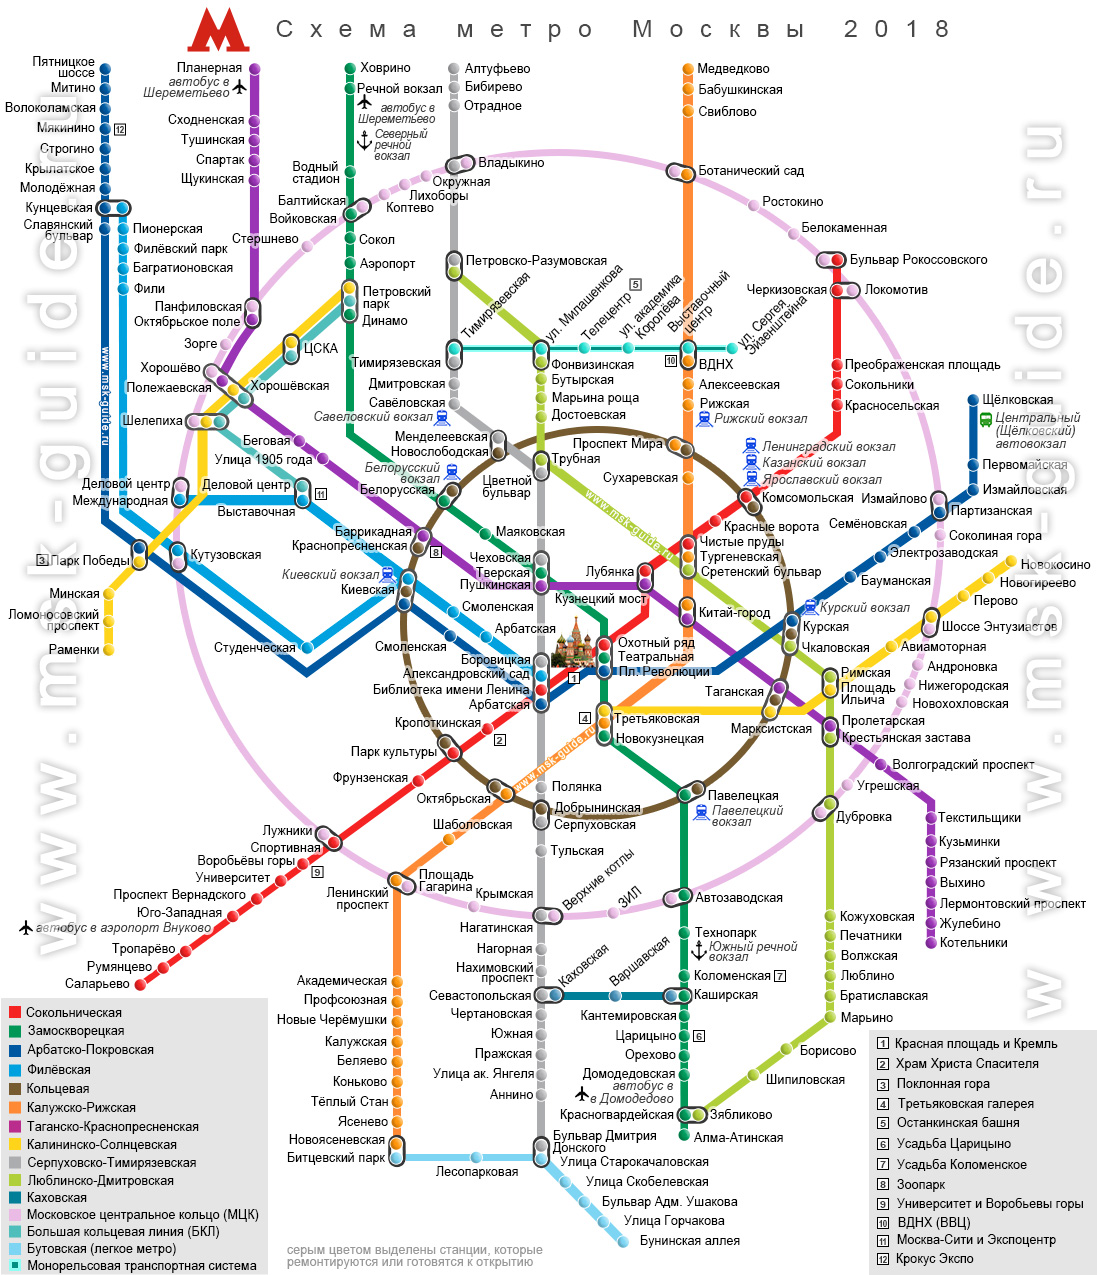 Метро тушинская на схеме метро москвы показать